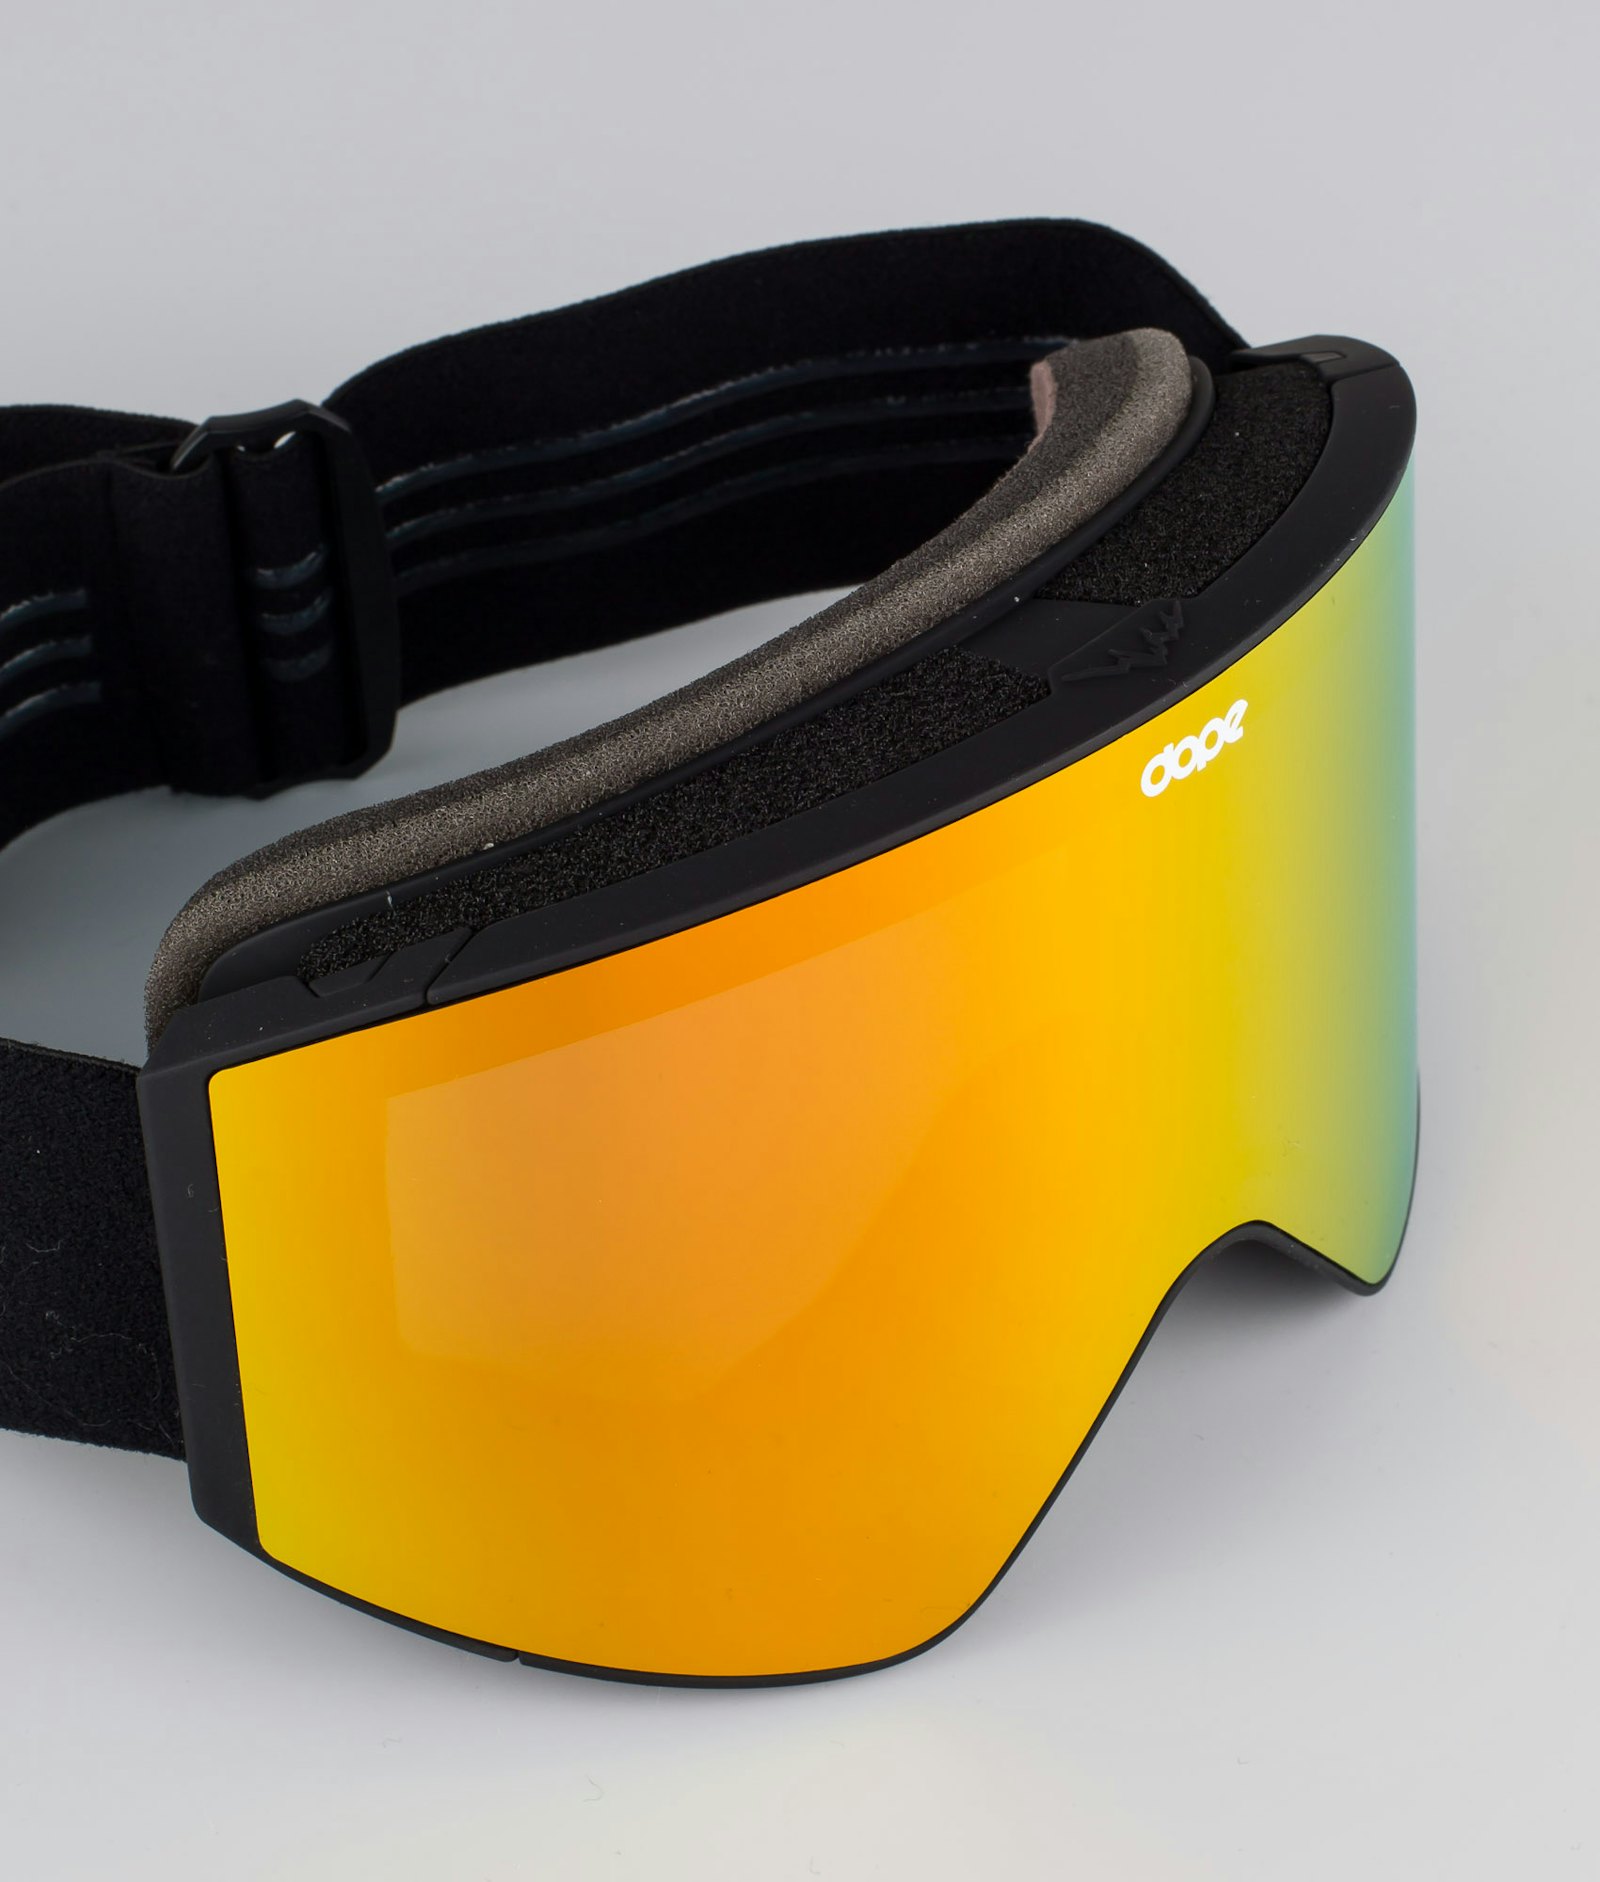 Sight 2020 Ski Goggles Black/Red Mirror